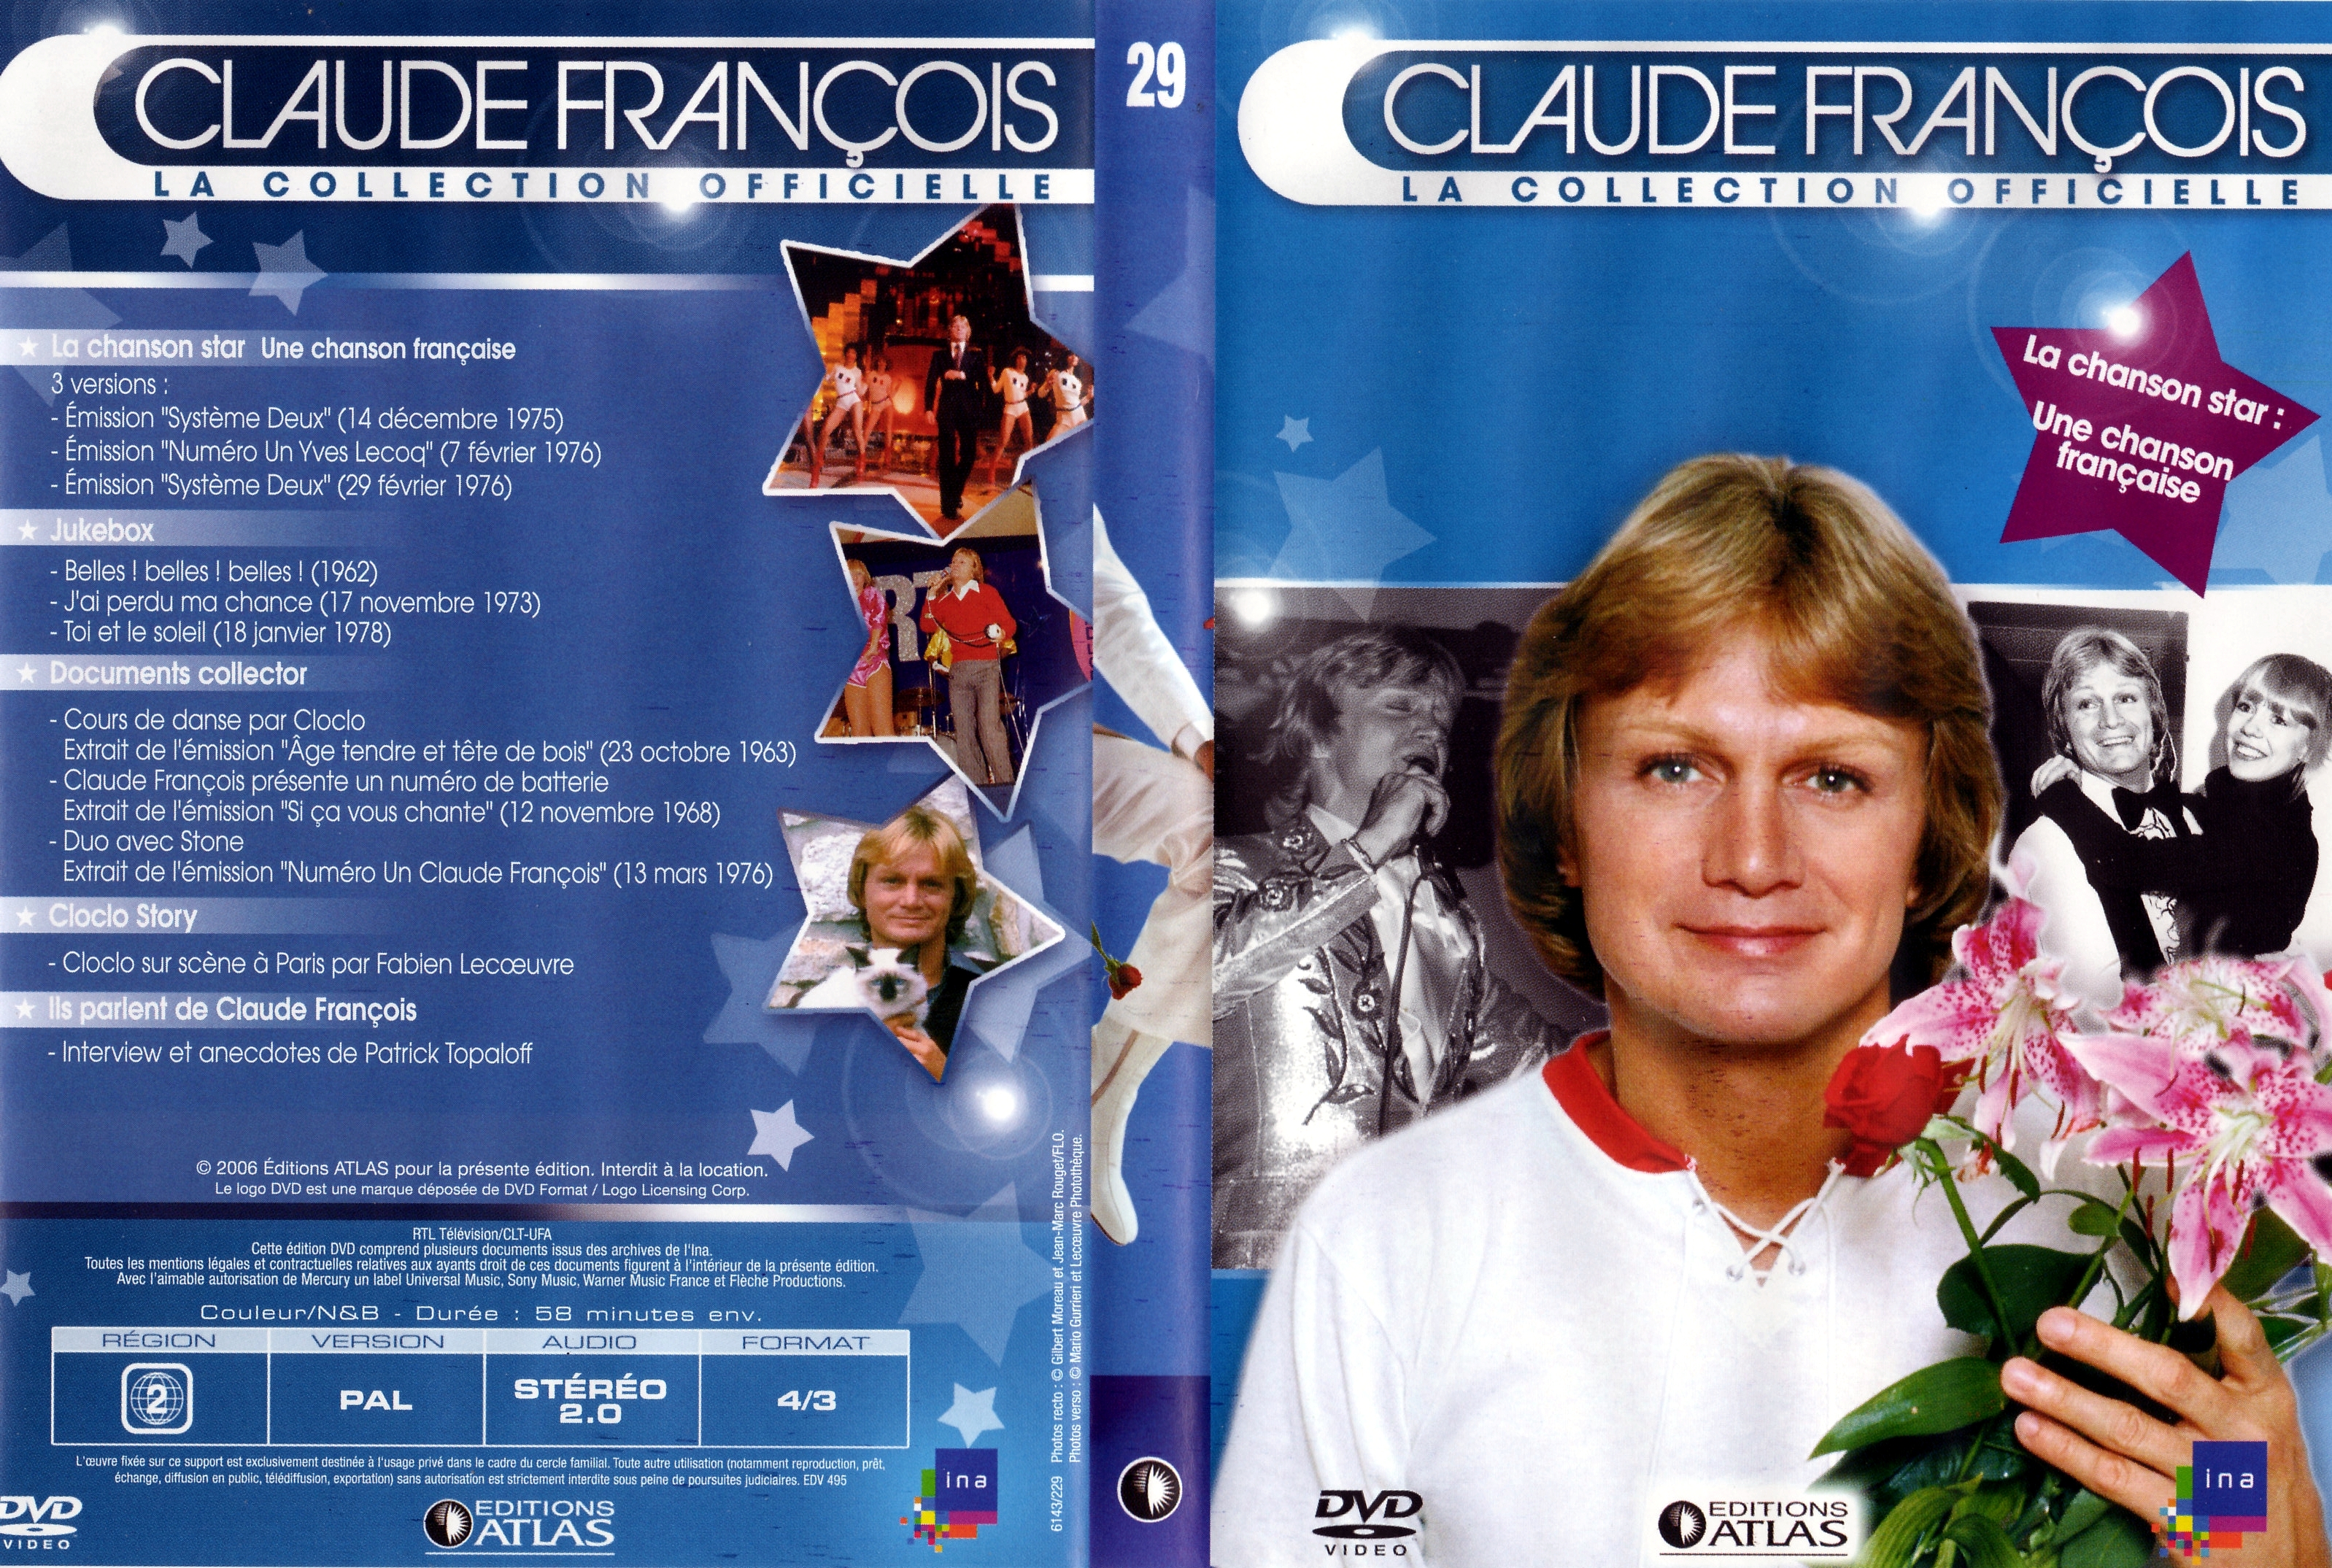 Jaquette DVD Claude Francois la collection officielle vol 29